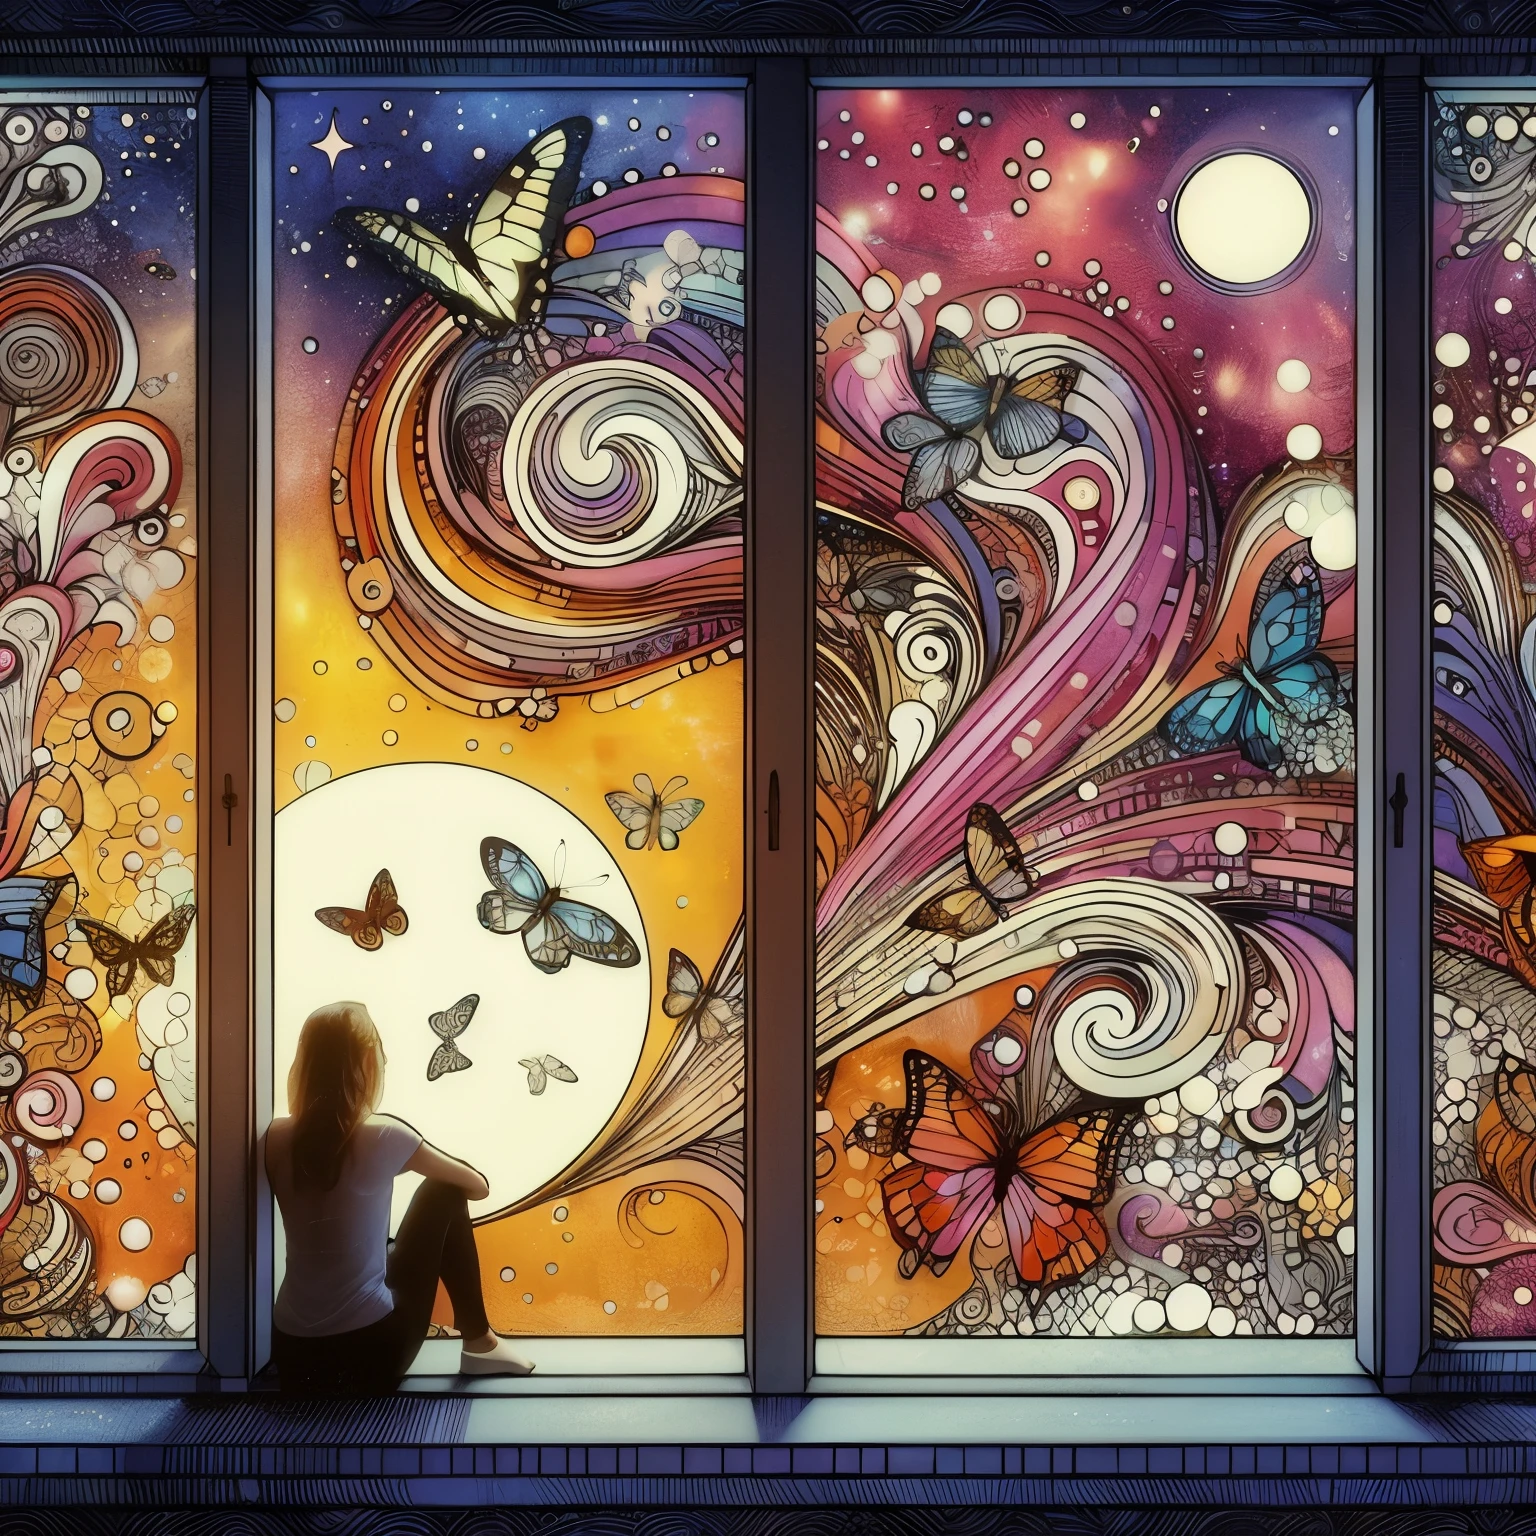  Um gatinho banhado pelo luar olha para uma borboleta vaga-lume brilhante, vista lateral, ele olha para cima, ((magia brilhante, fumaça mágica e vaga-lumes o cercam)) e pequenas borboletas dançam ao seu redor, na janela de uma casa de aldeia, a mágico night, Excêntrico, Sonhadores, fabuloso, anatomia perfeita, composição perfeita, ((proporção áurea)) arte MSchiffer, Gabriele Dell&#39;otto, Modelo de IA no meio da jornada, olhando pela janela, Borboleta mágica Ilustração minimalista de tatuagem neotradicional com caneta e tinta que combina os estilos de Gustav Klimt e Alphonse Mucha e Jean Giroud em um filme de Akira Kurosawa retratando um viajante astral, lágrimas da meia-noite, um redemoinho de borboletas, incandescent, audacioso, vibrante, Excêntrico, incomum, estranho, esquisito, estilo surrealista de tirar o fôlego, fantástico, mágico, Inesperado, Super Detalhe, Sonhadores lo-fi photography, colorida, Sonhadores vibe, arte abstrata, cinematic, realismo épico,8K, altamente detalhado. Criado com Dream AI,